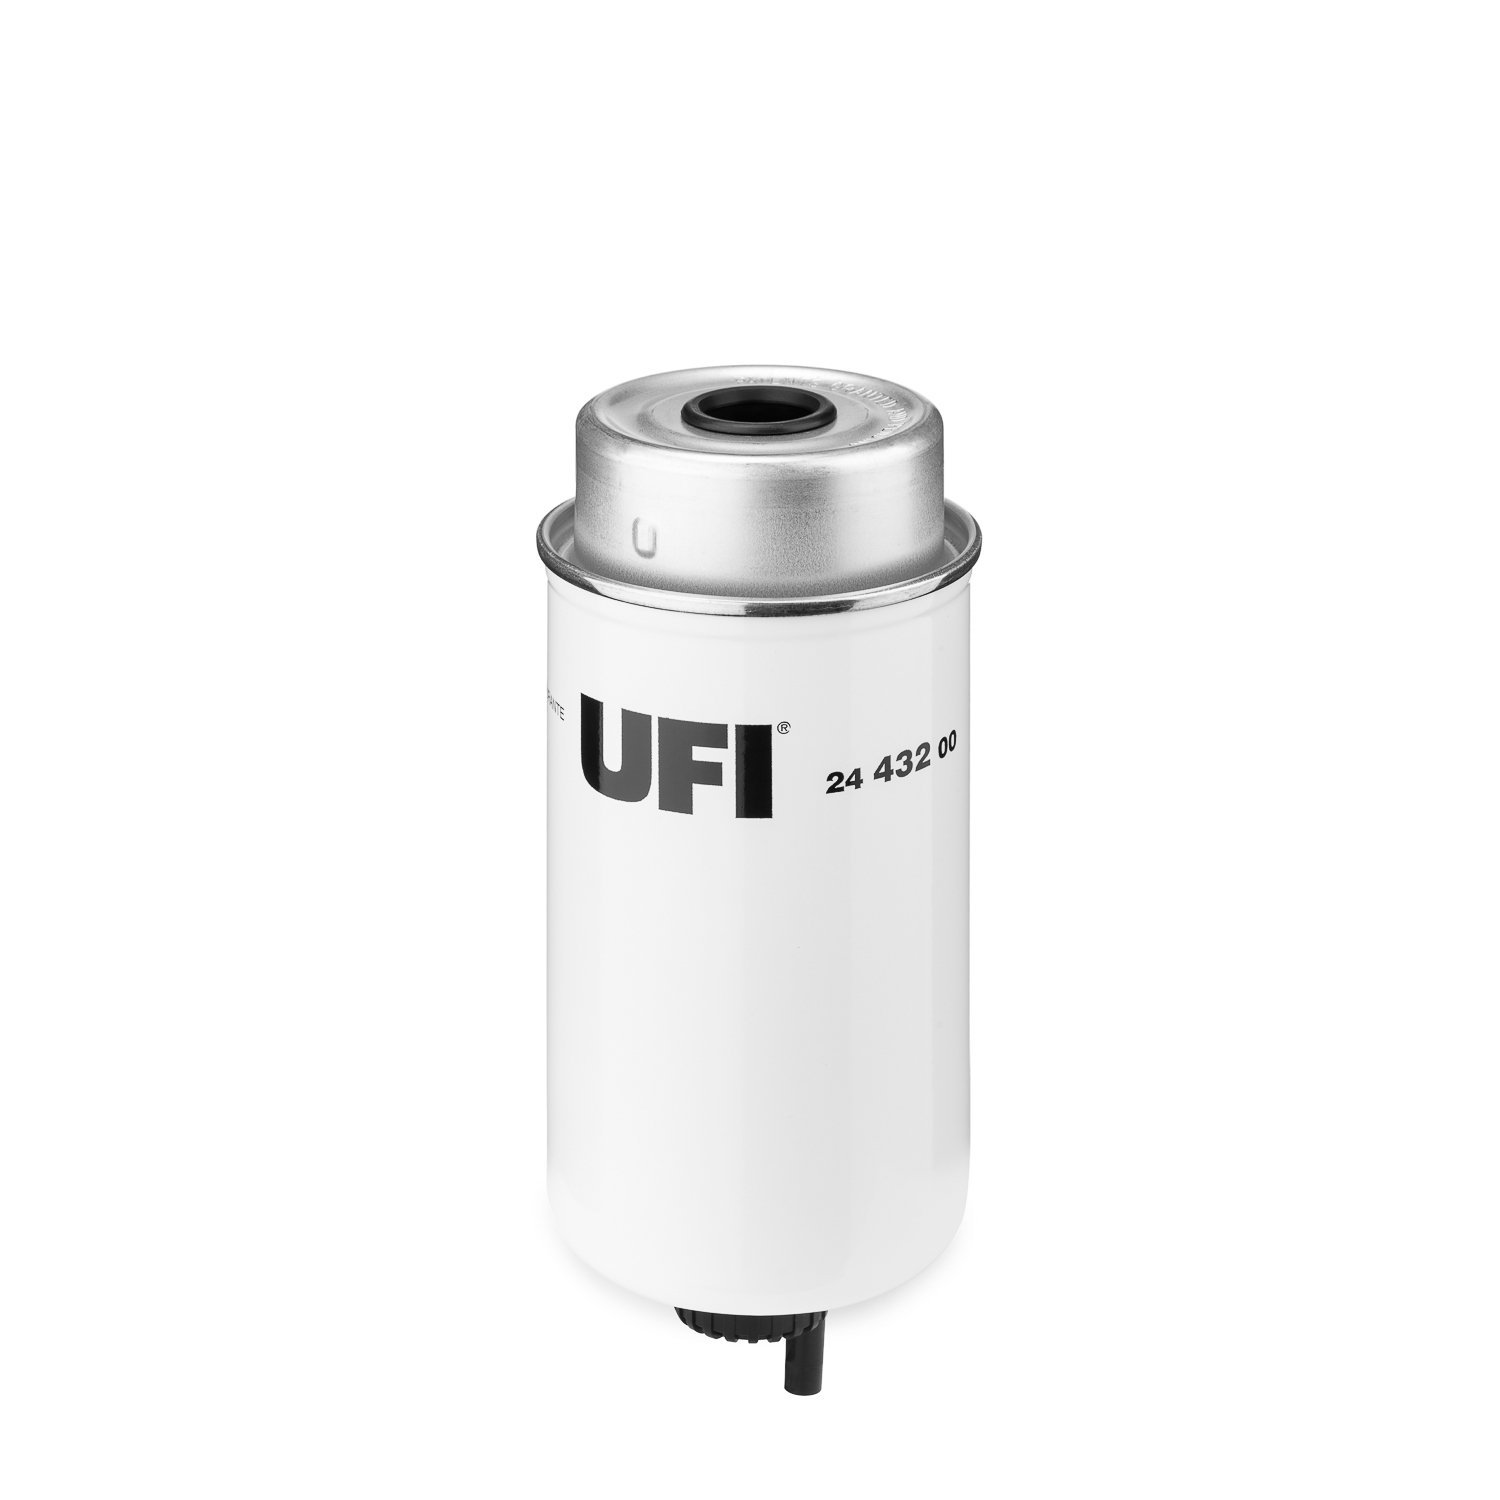 Ufi Filters 24.432.00 Filtro Diesel von UFI